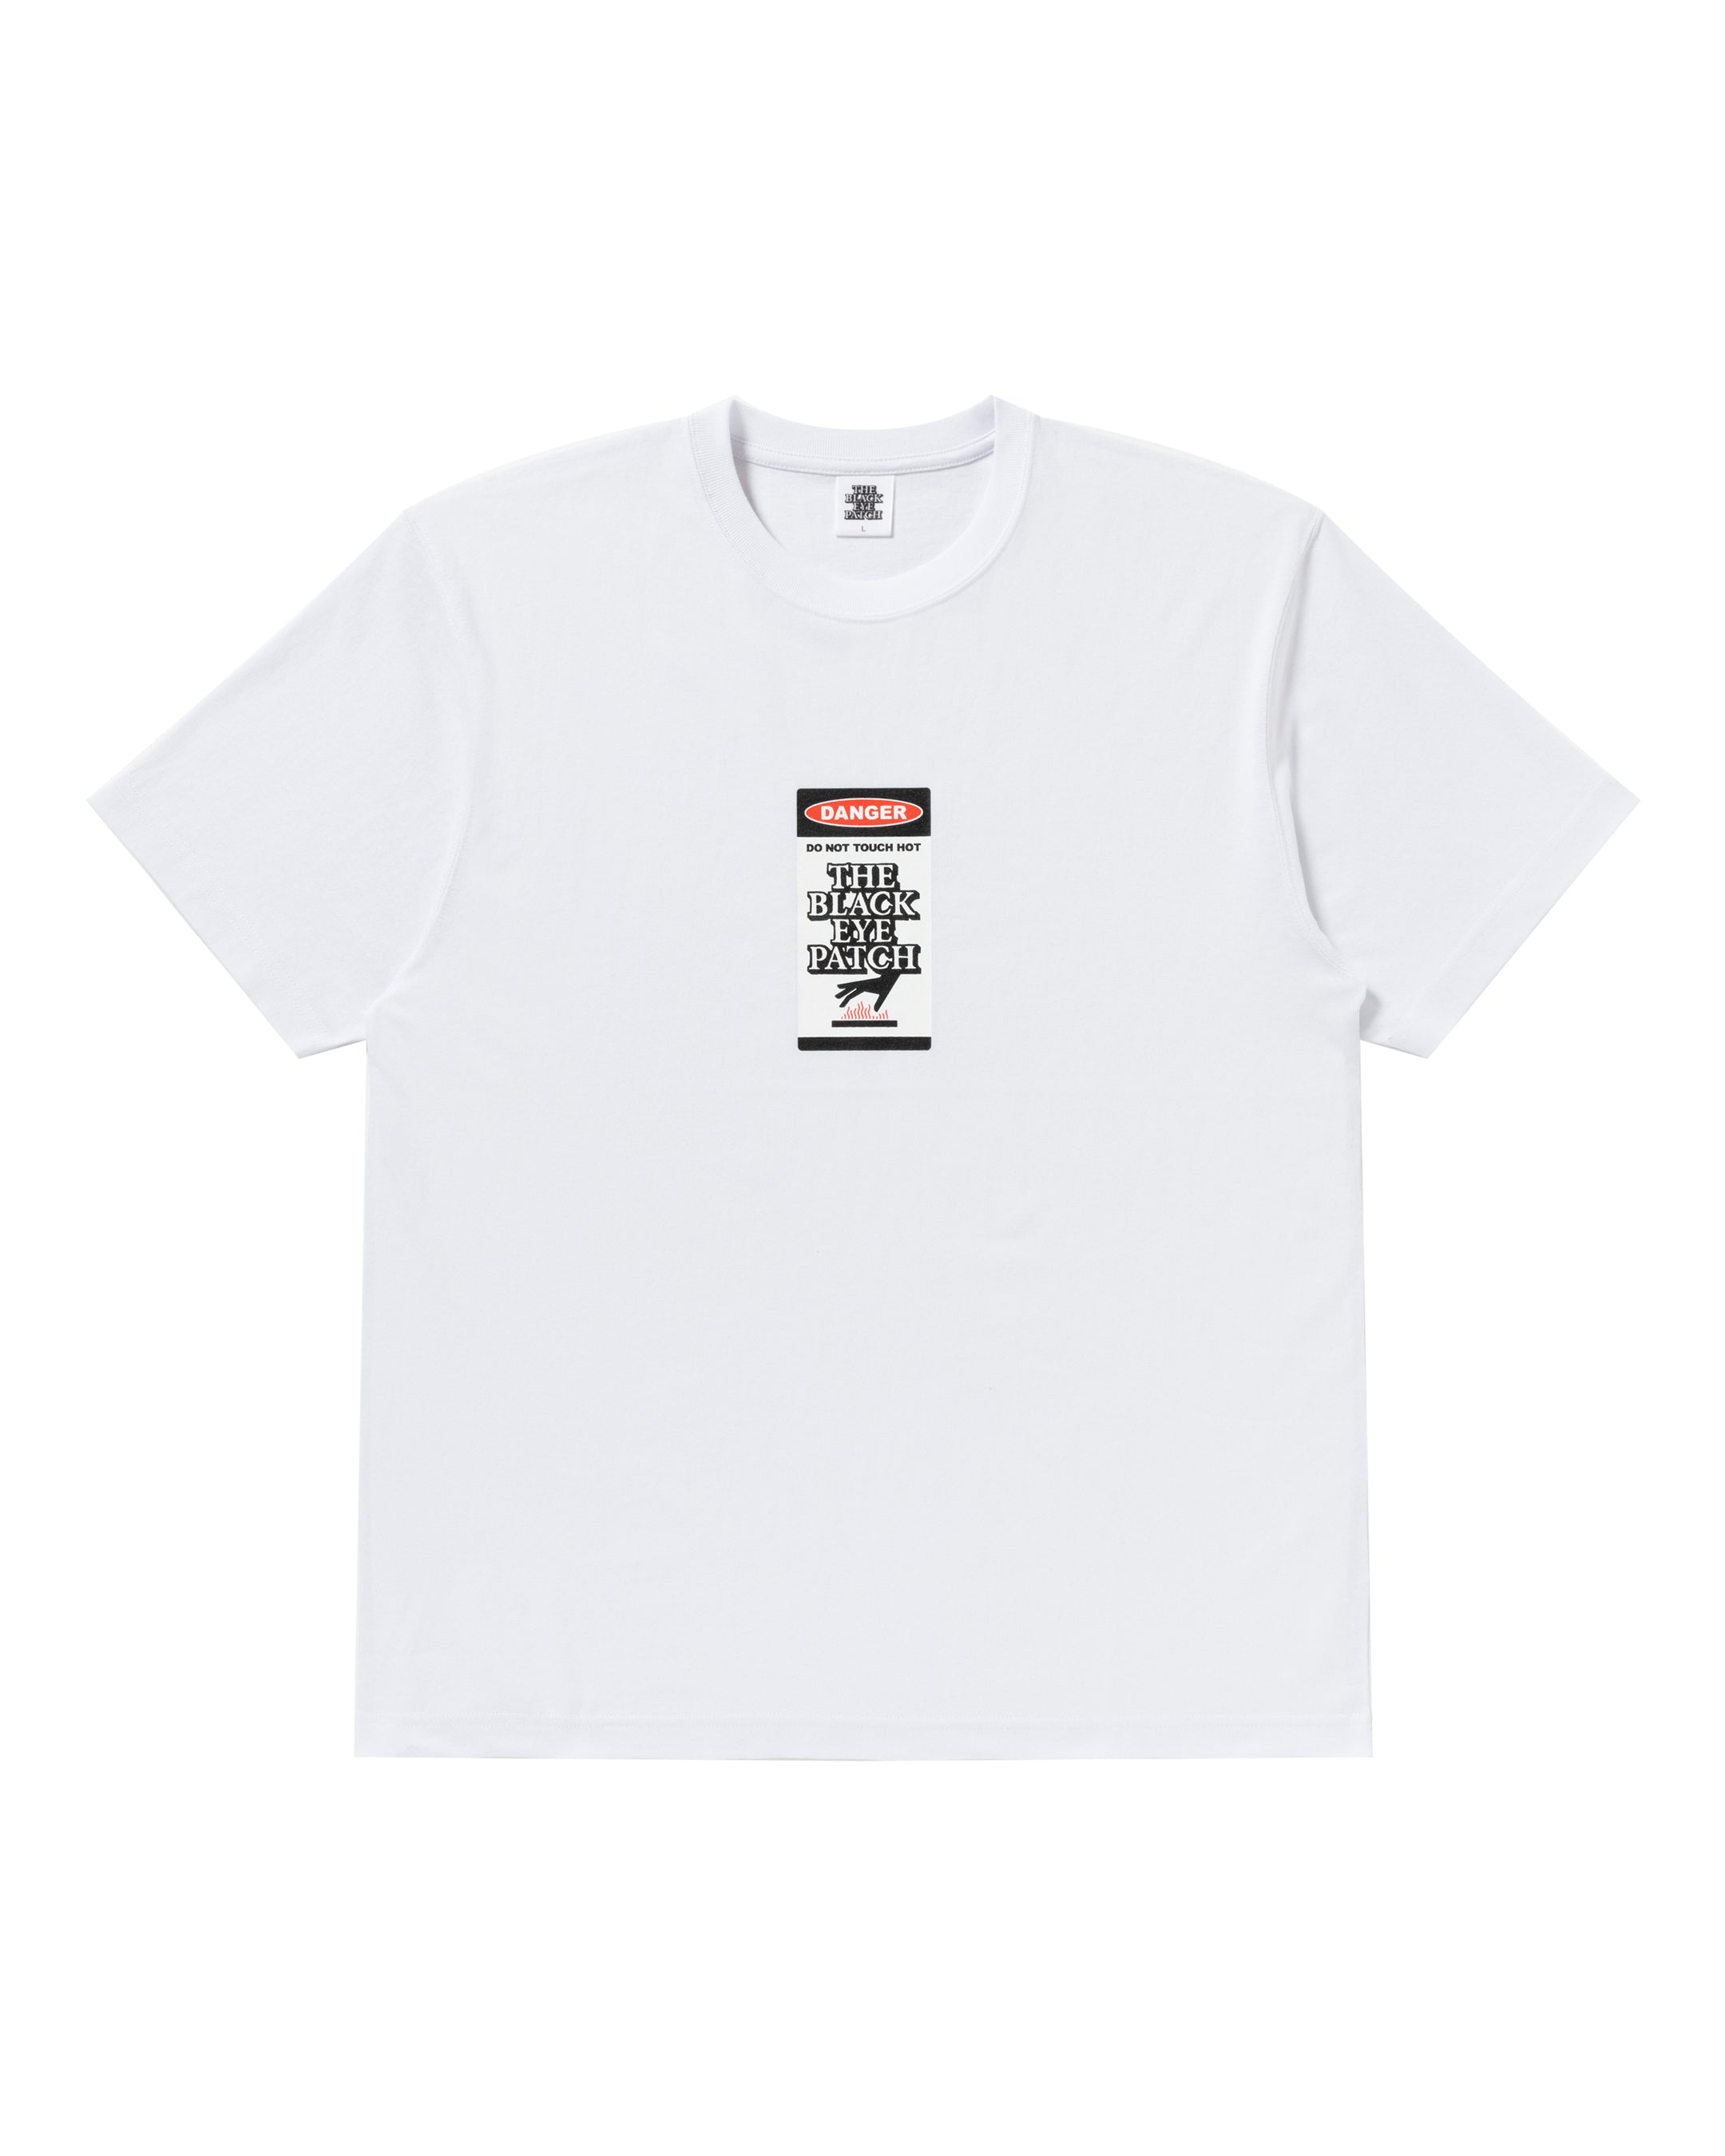 DANGER HOT LABEL TEE WHITE XLサイズ - Tシャツ/カットソー(半袖/袖なし)